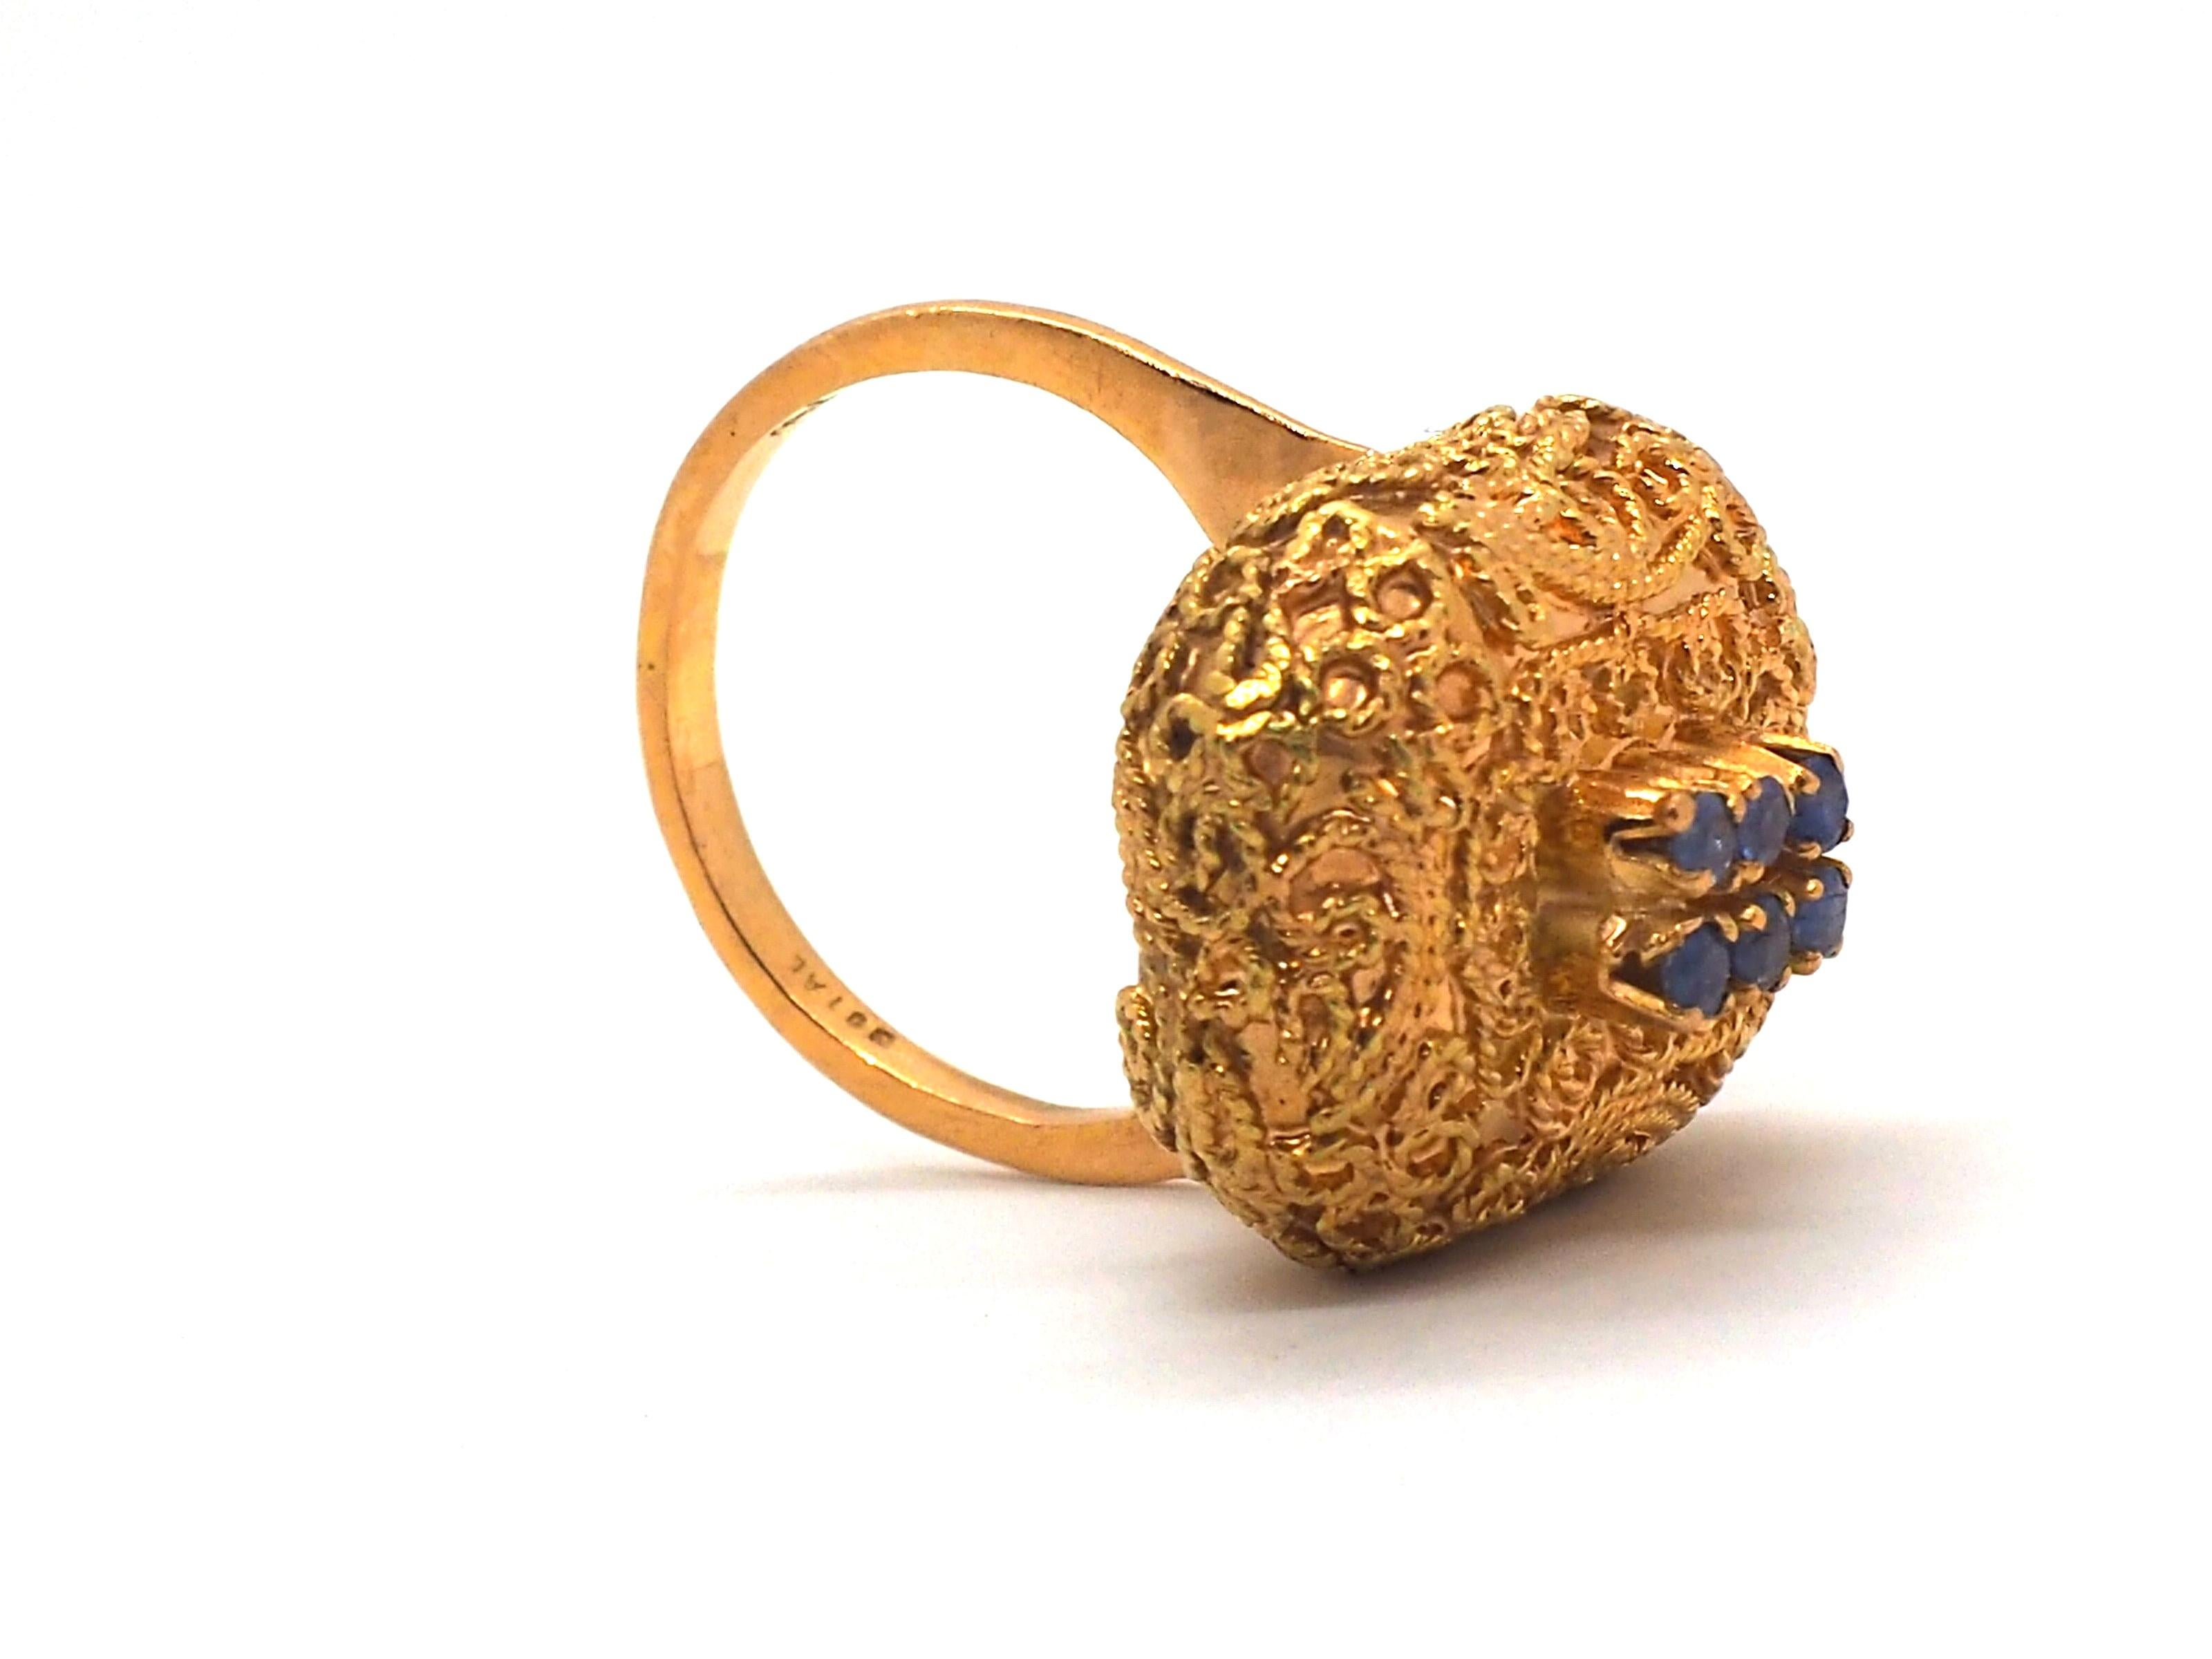 Ein Vintage-Ring aus 18 Karat Gelbgold ist ein exklusives Unikat  ein Schmuckstück. Der warme Ton des Gelbgolds verleiht dem Ring eine zeitlose und elegante Ausstrahlung.

Der Ring ist mit sechs kleinen Saphiren verziert, die ihm einen Hauch von